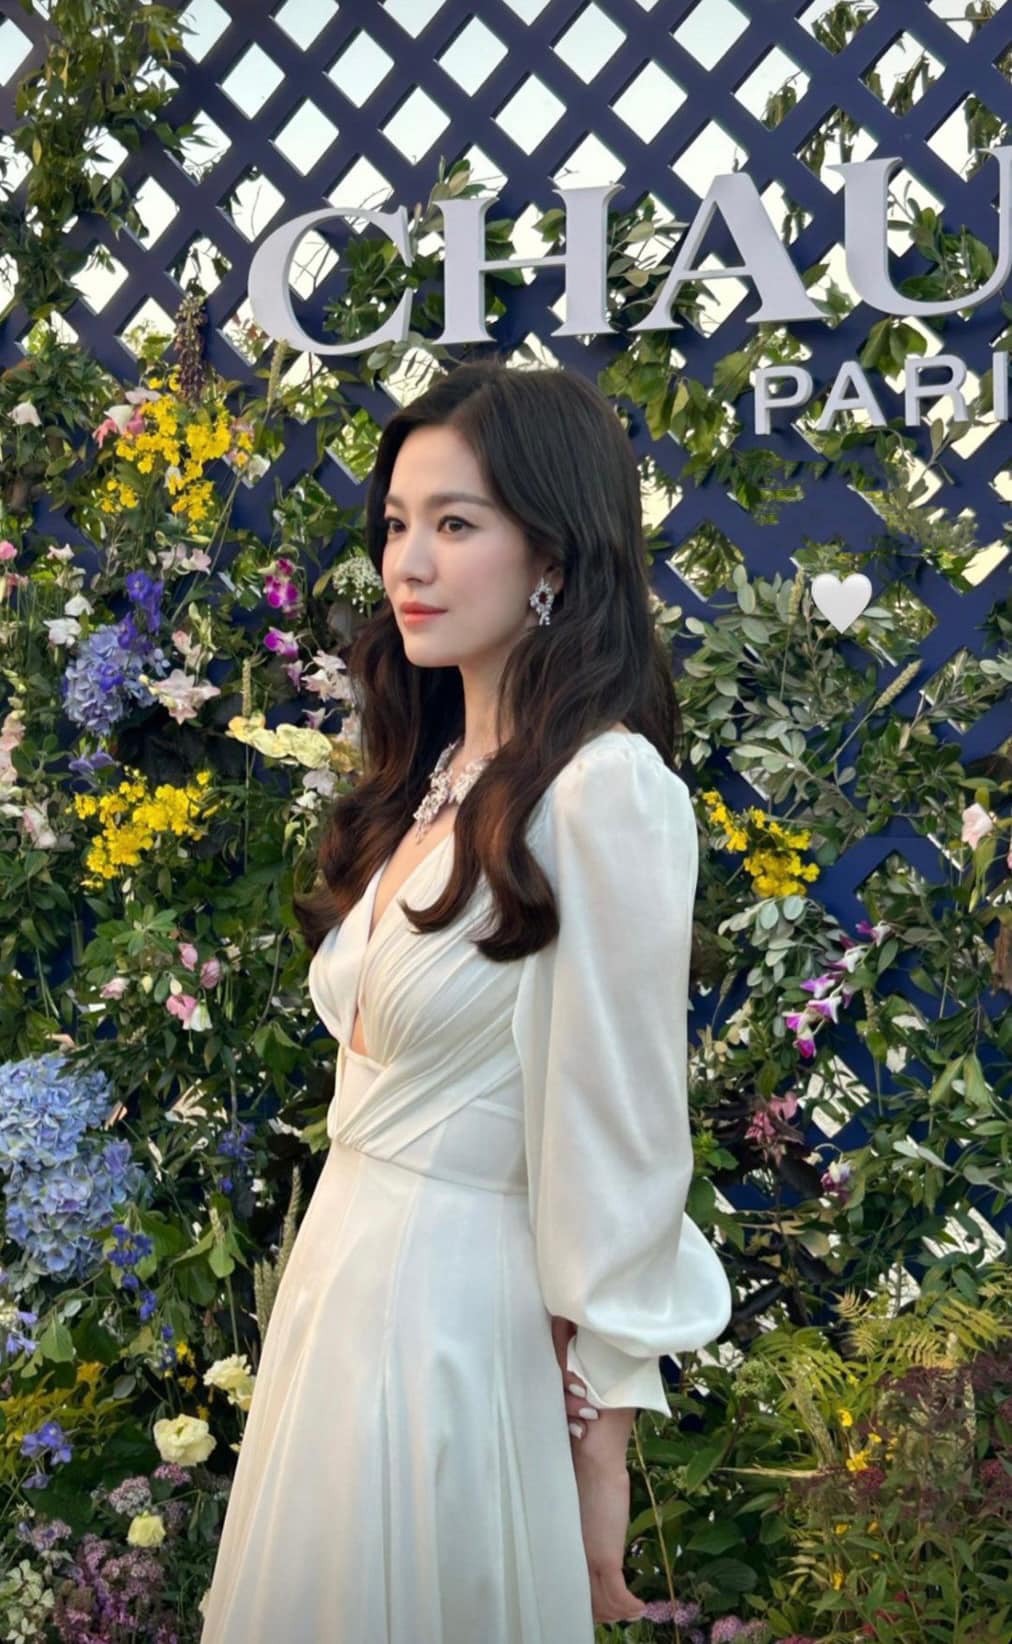 Kiểu tóc của Song Hye Kyo: Xoăn nhẹ bồng bềnh, buộc hay búi gọn đều đẹp tựa nàng thơ- Ảnh 6.